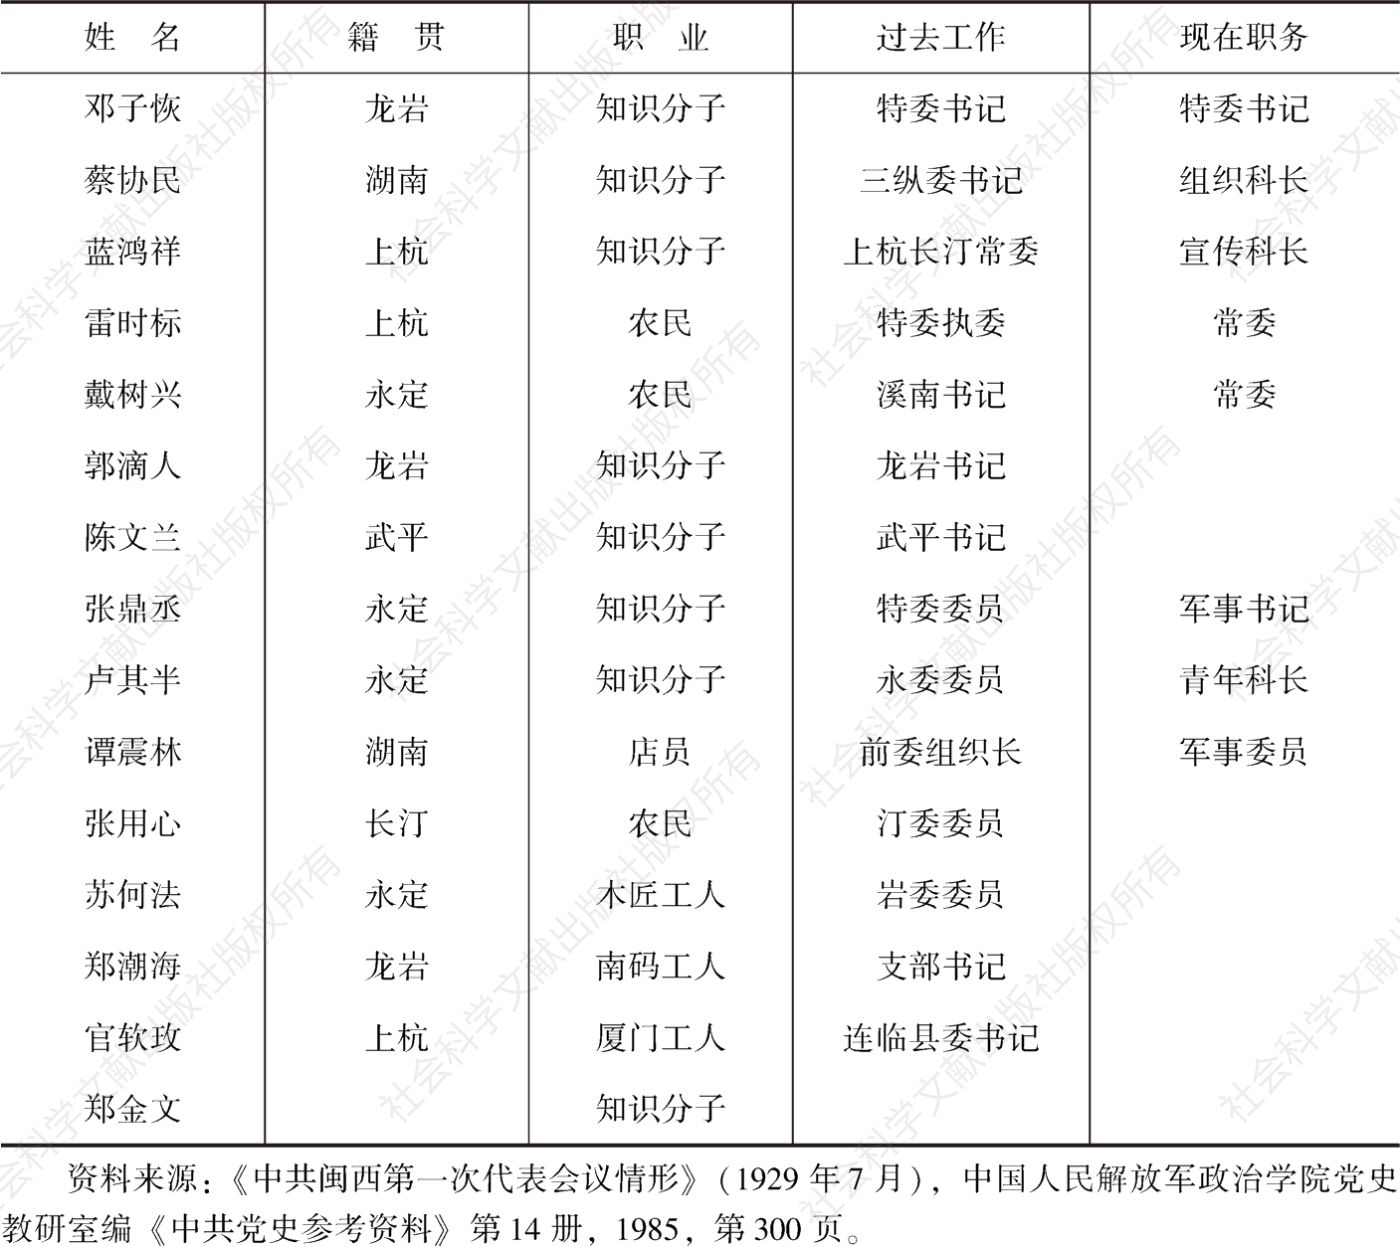 表2-1 1929年闽西各县县委名单